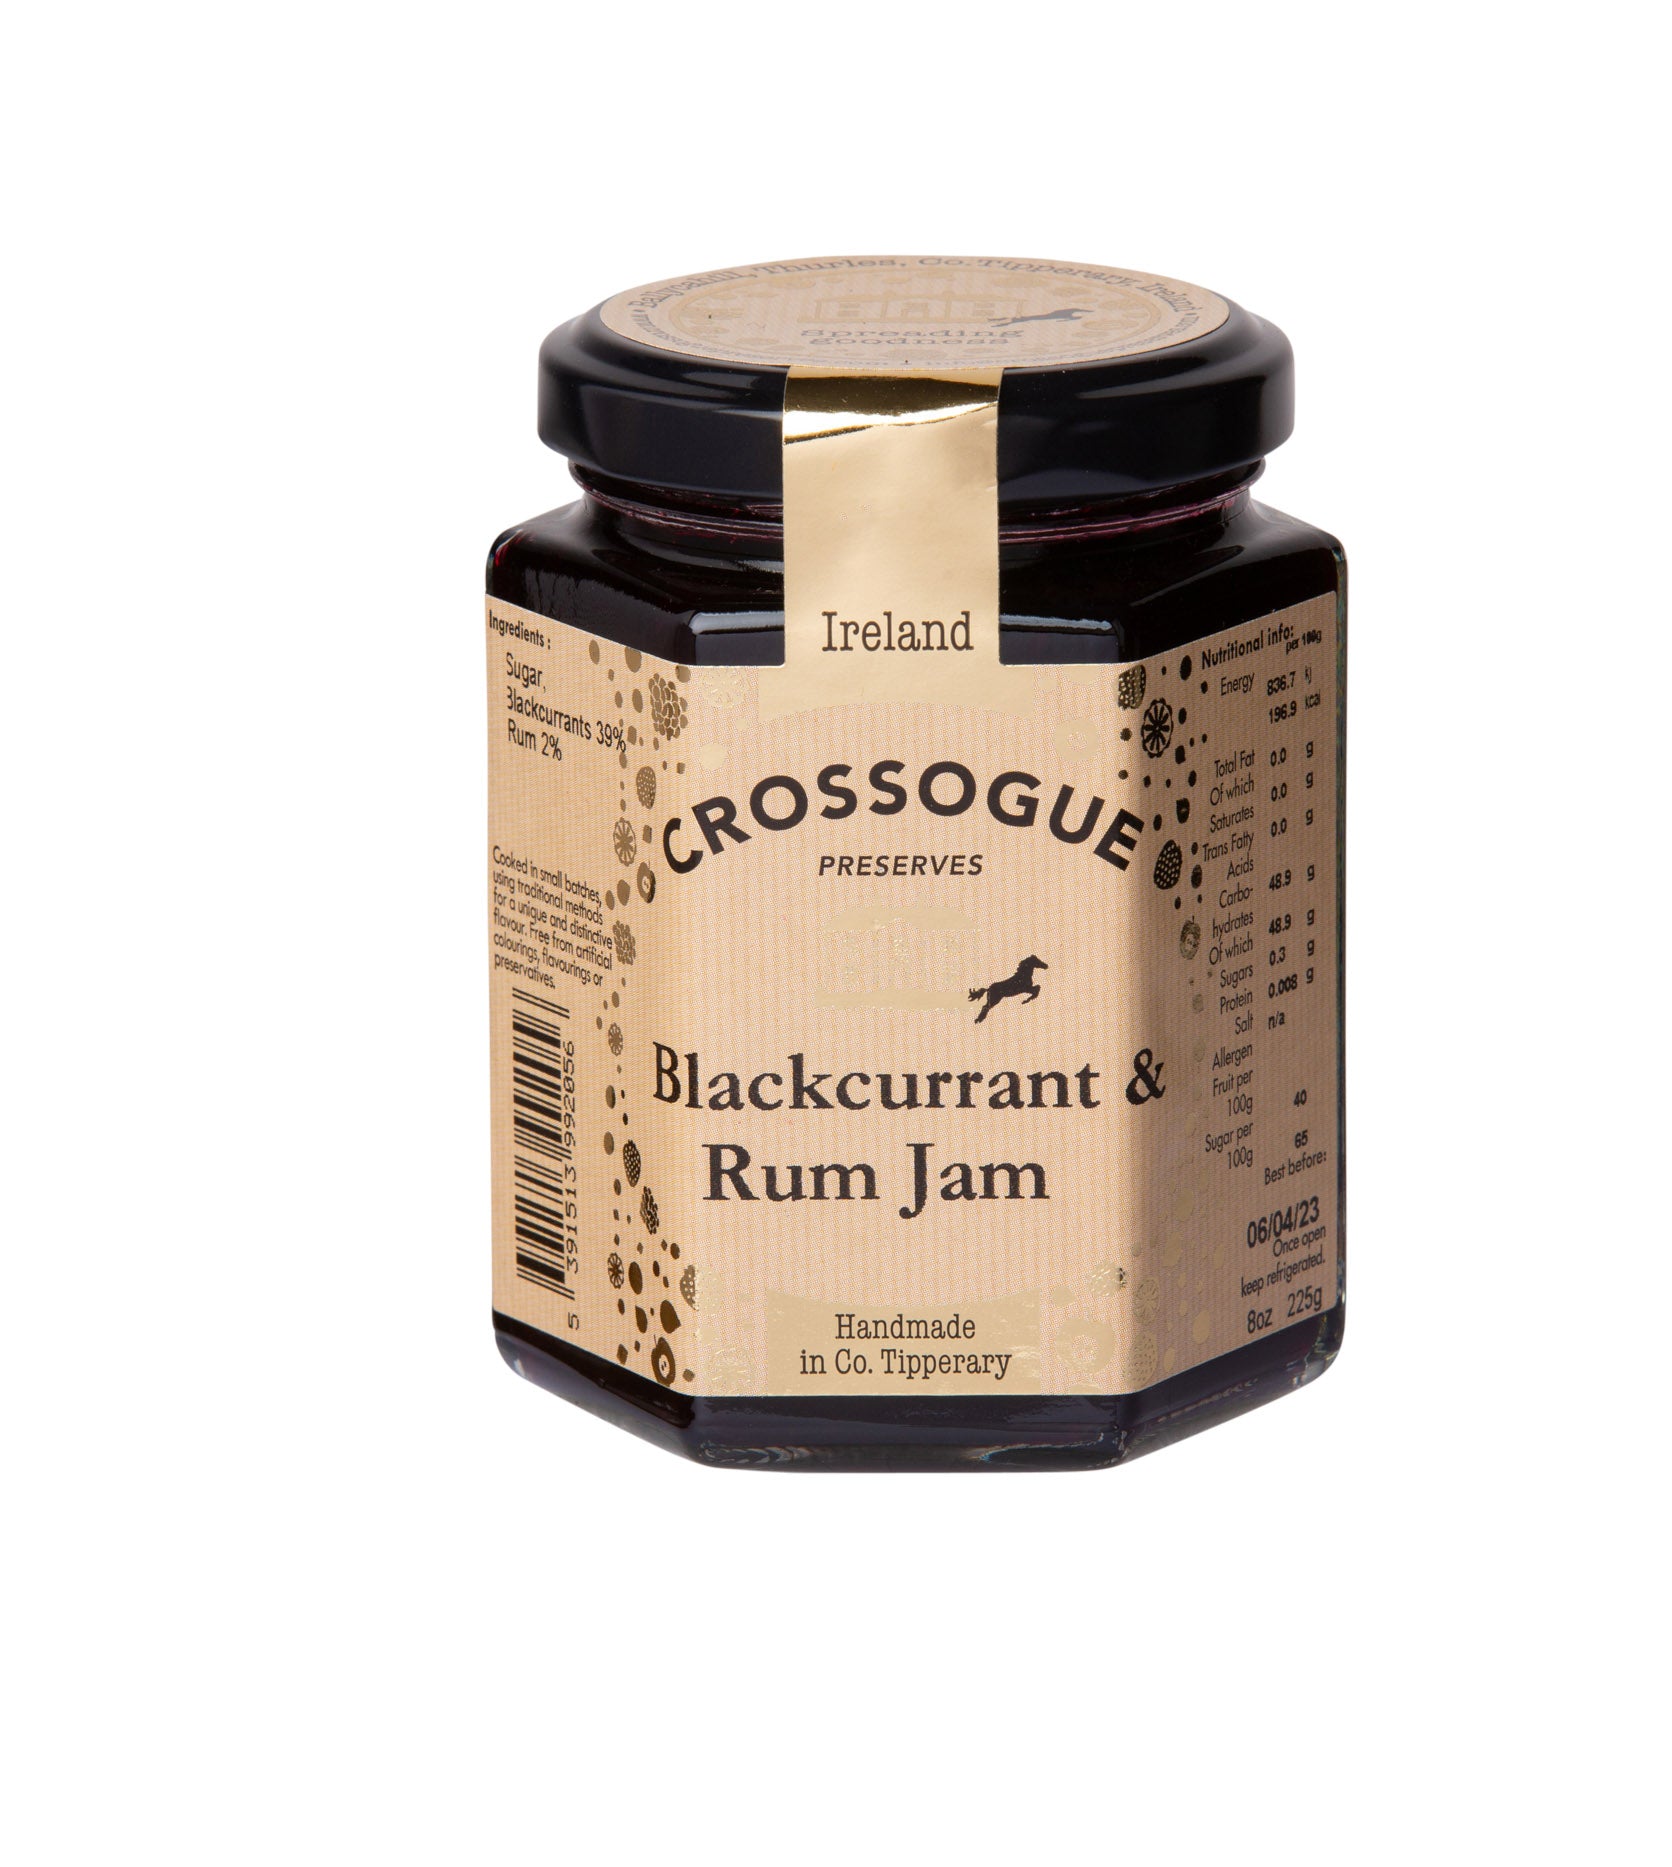 Blackcurrant & Rum Jam